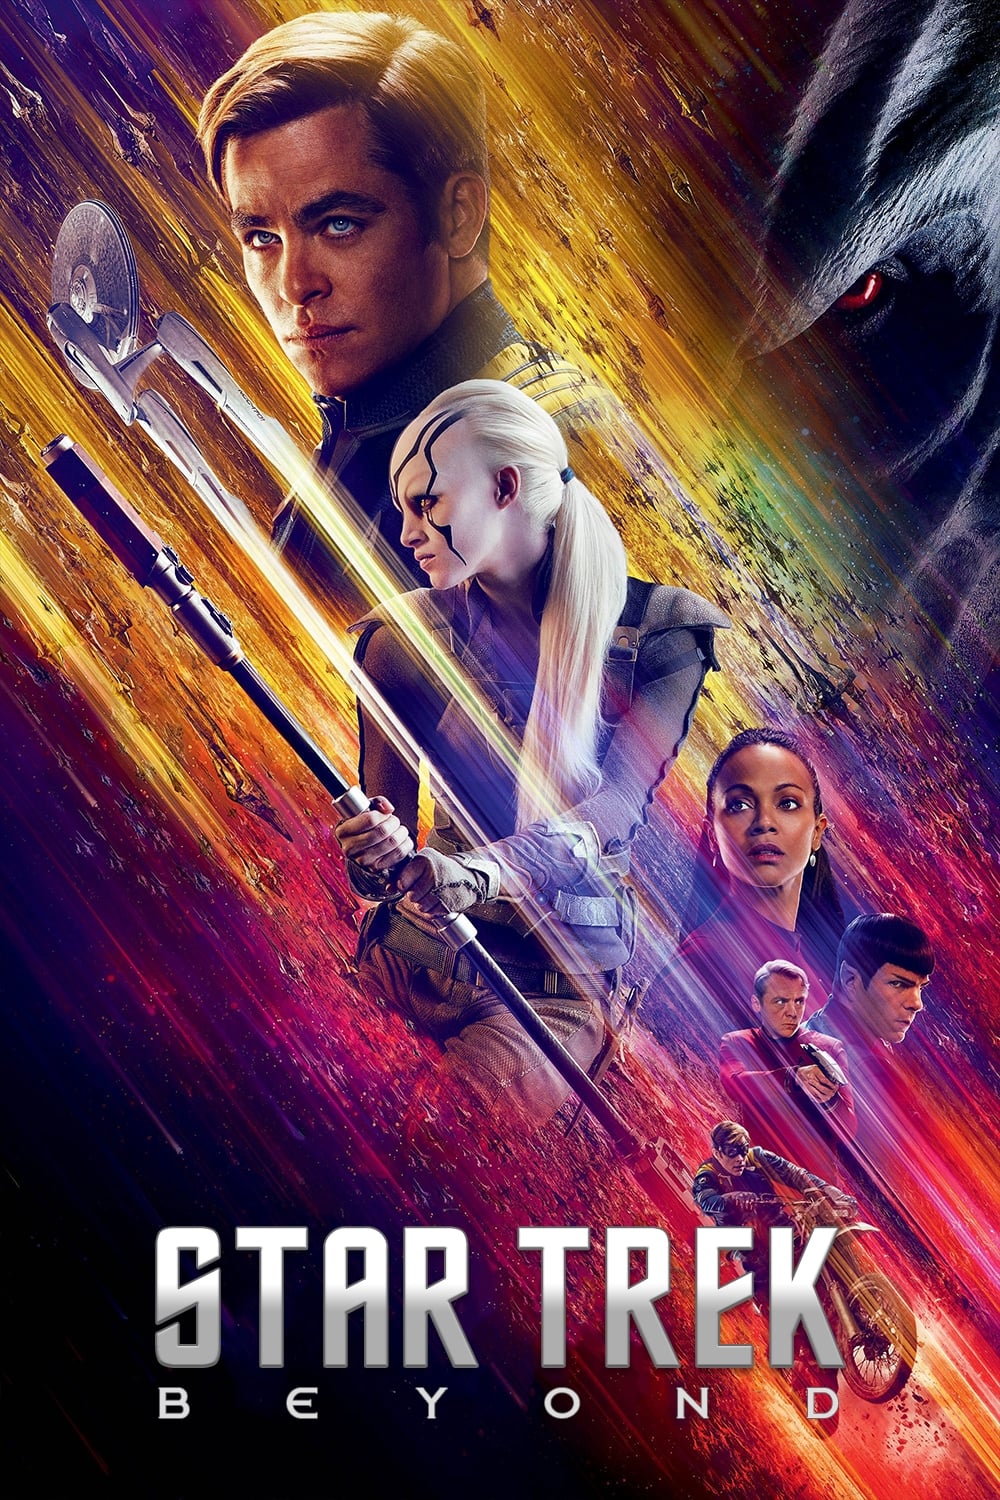 Star Trek : Sans limites